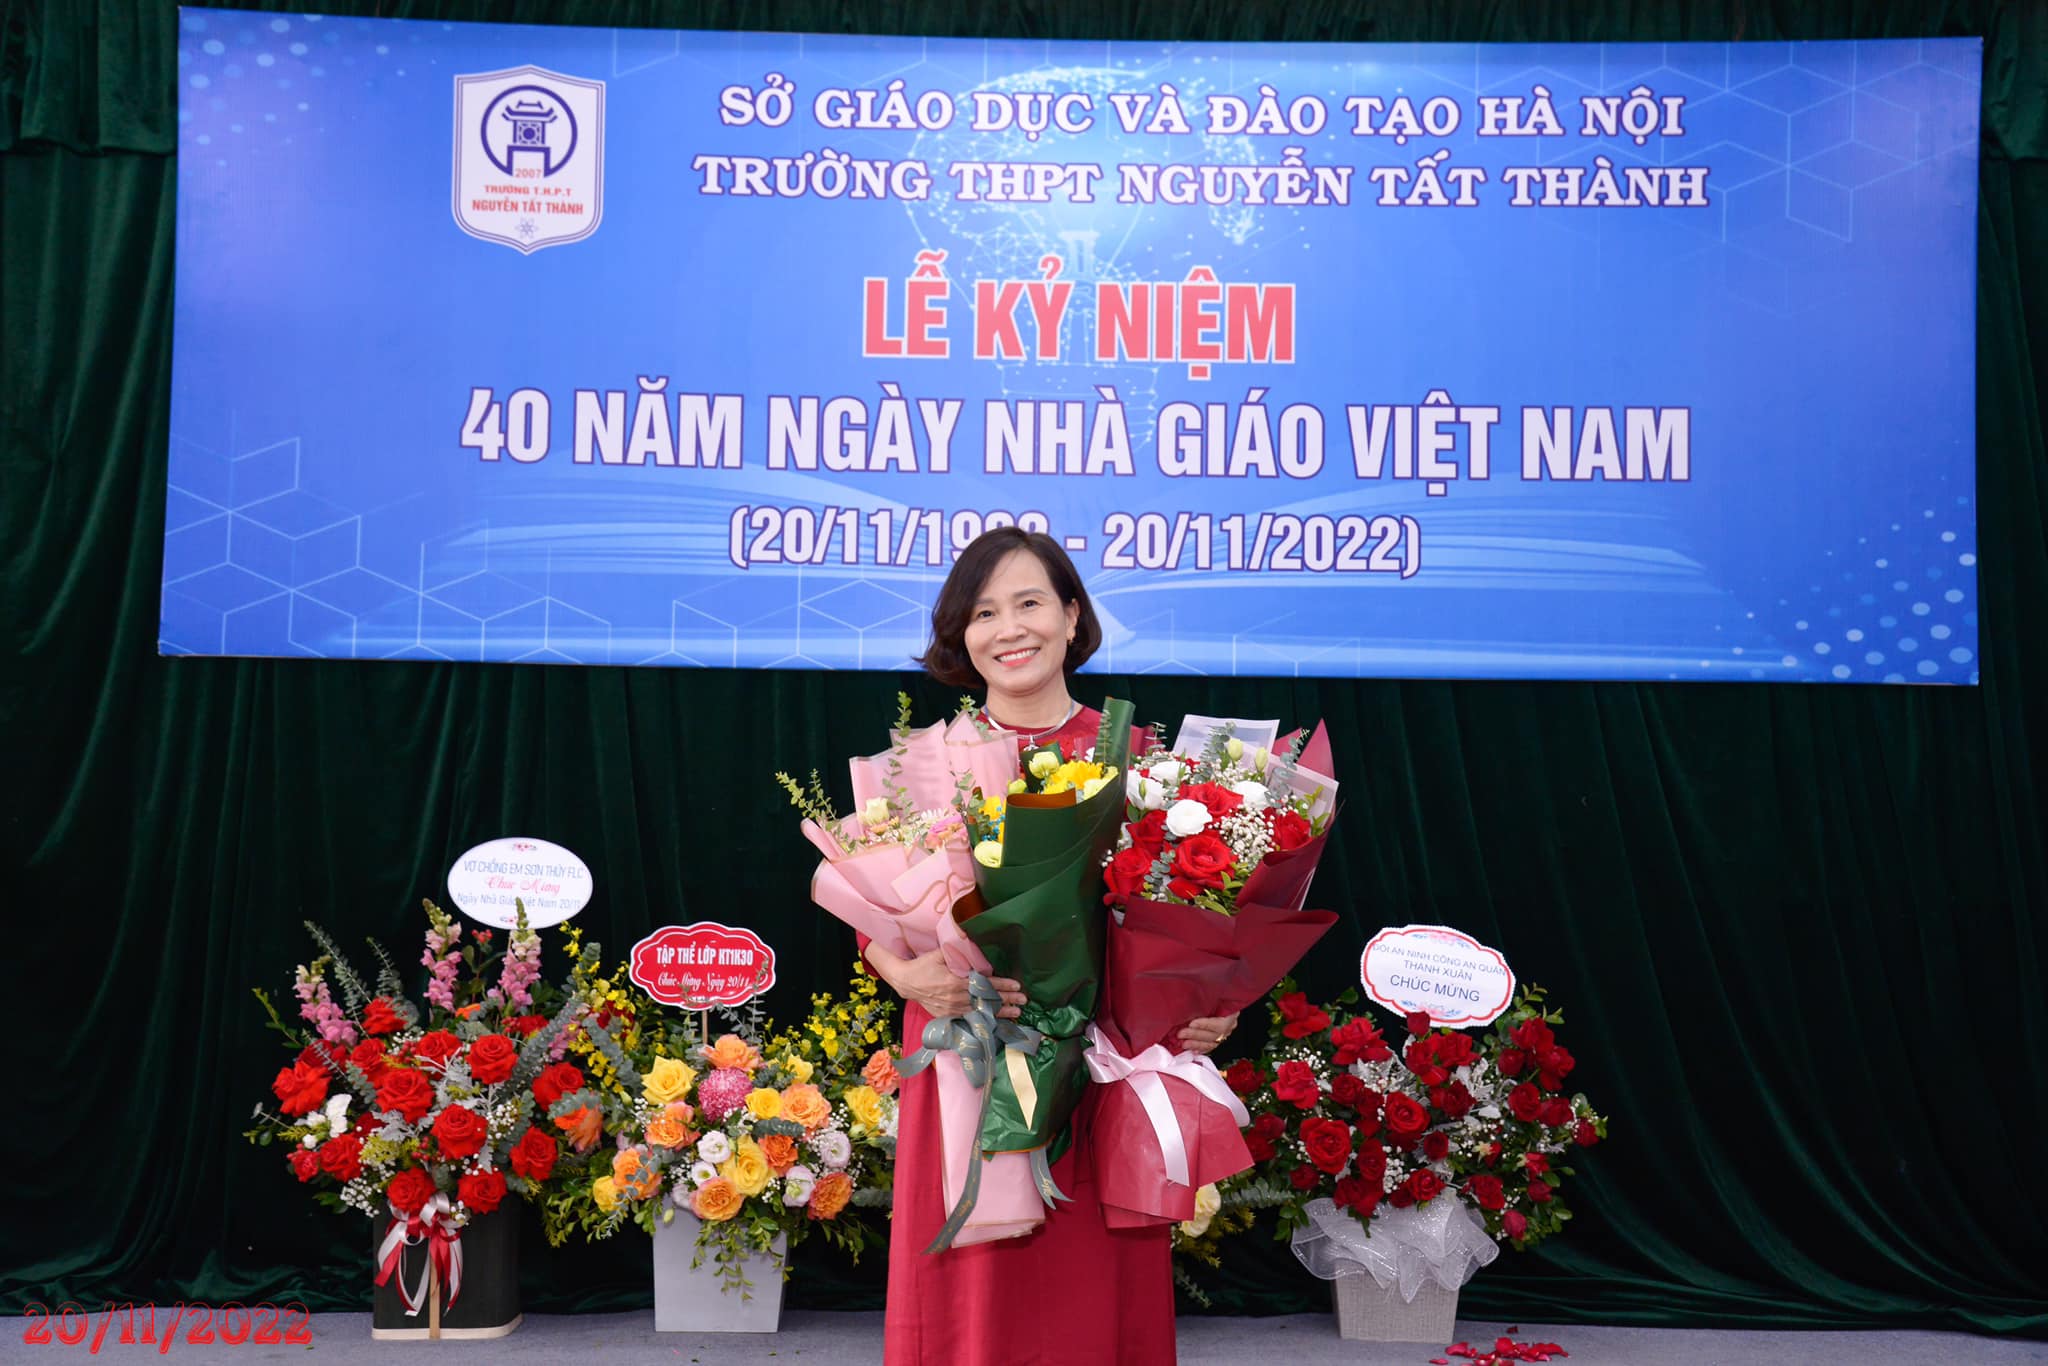 Ban giám hiệu trường THPT Nguyễn Tất Thành